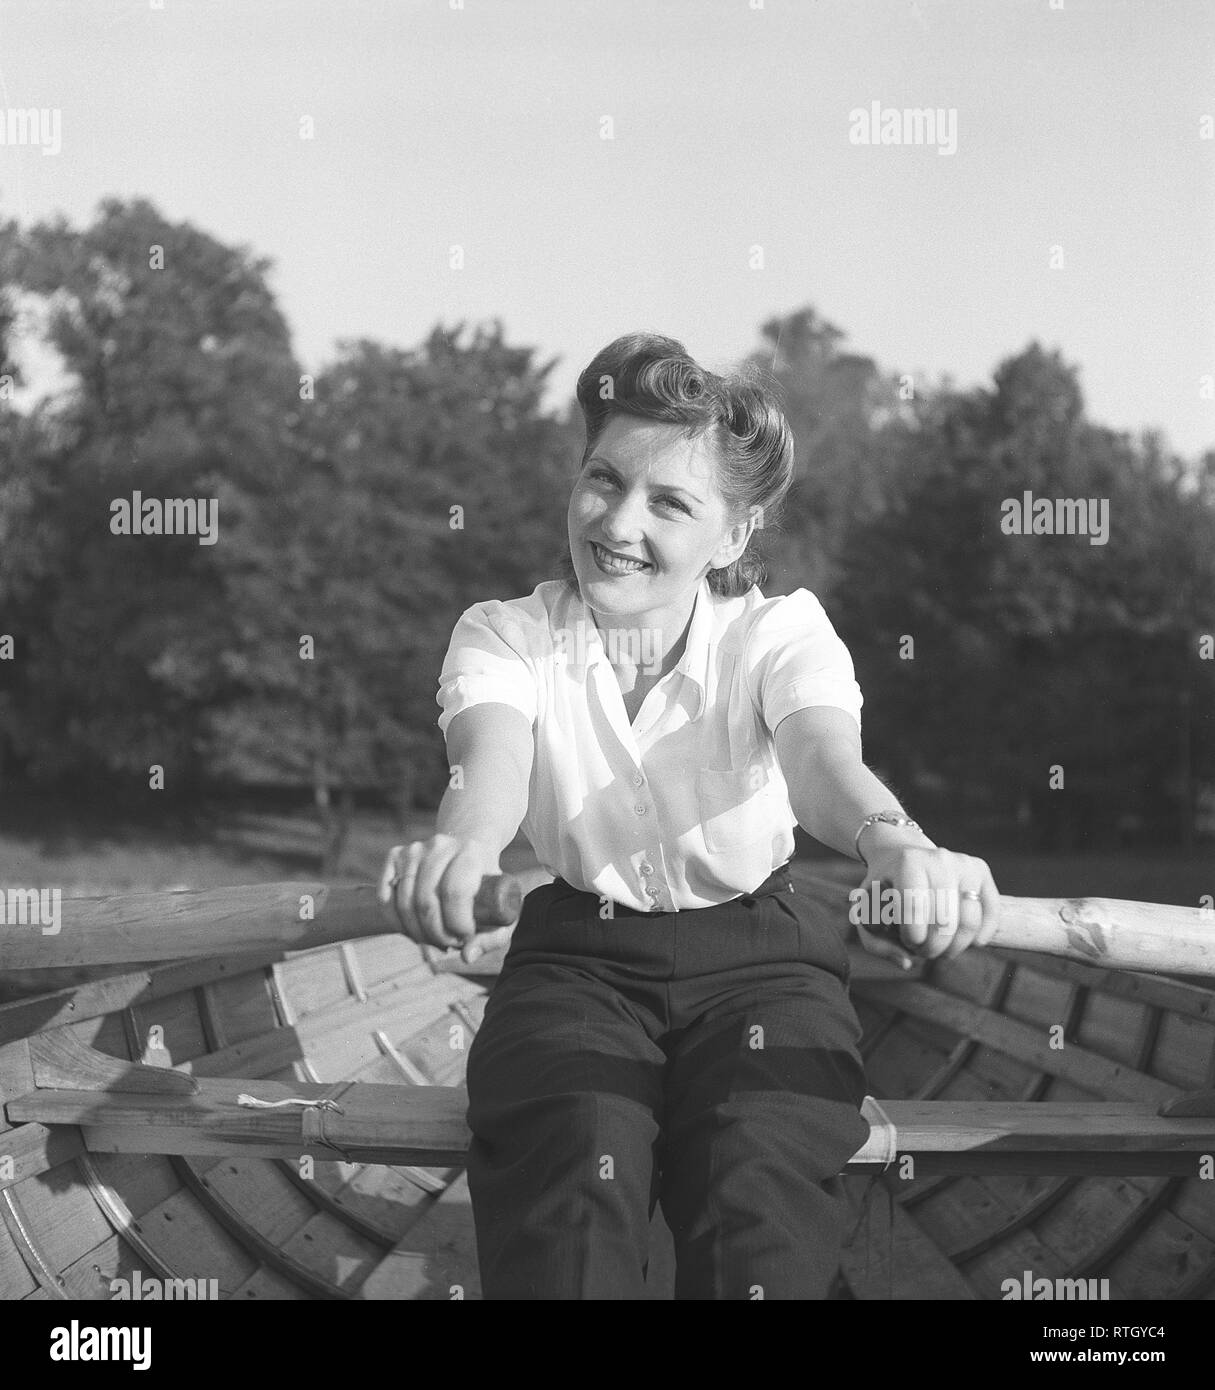 1940s'estate. Una giovane donna è remare una barca. Ella è l'attrice Barbro Kollberg. Foto Kristoffersson ref E52-3. La Svezia 1943 Foto Stock